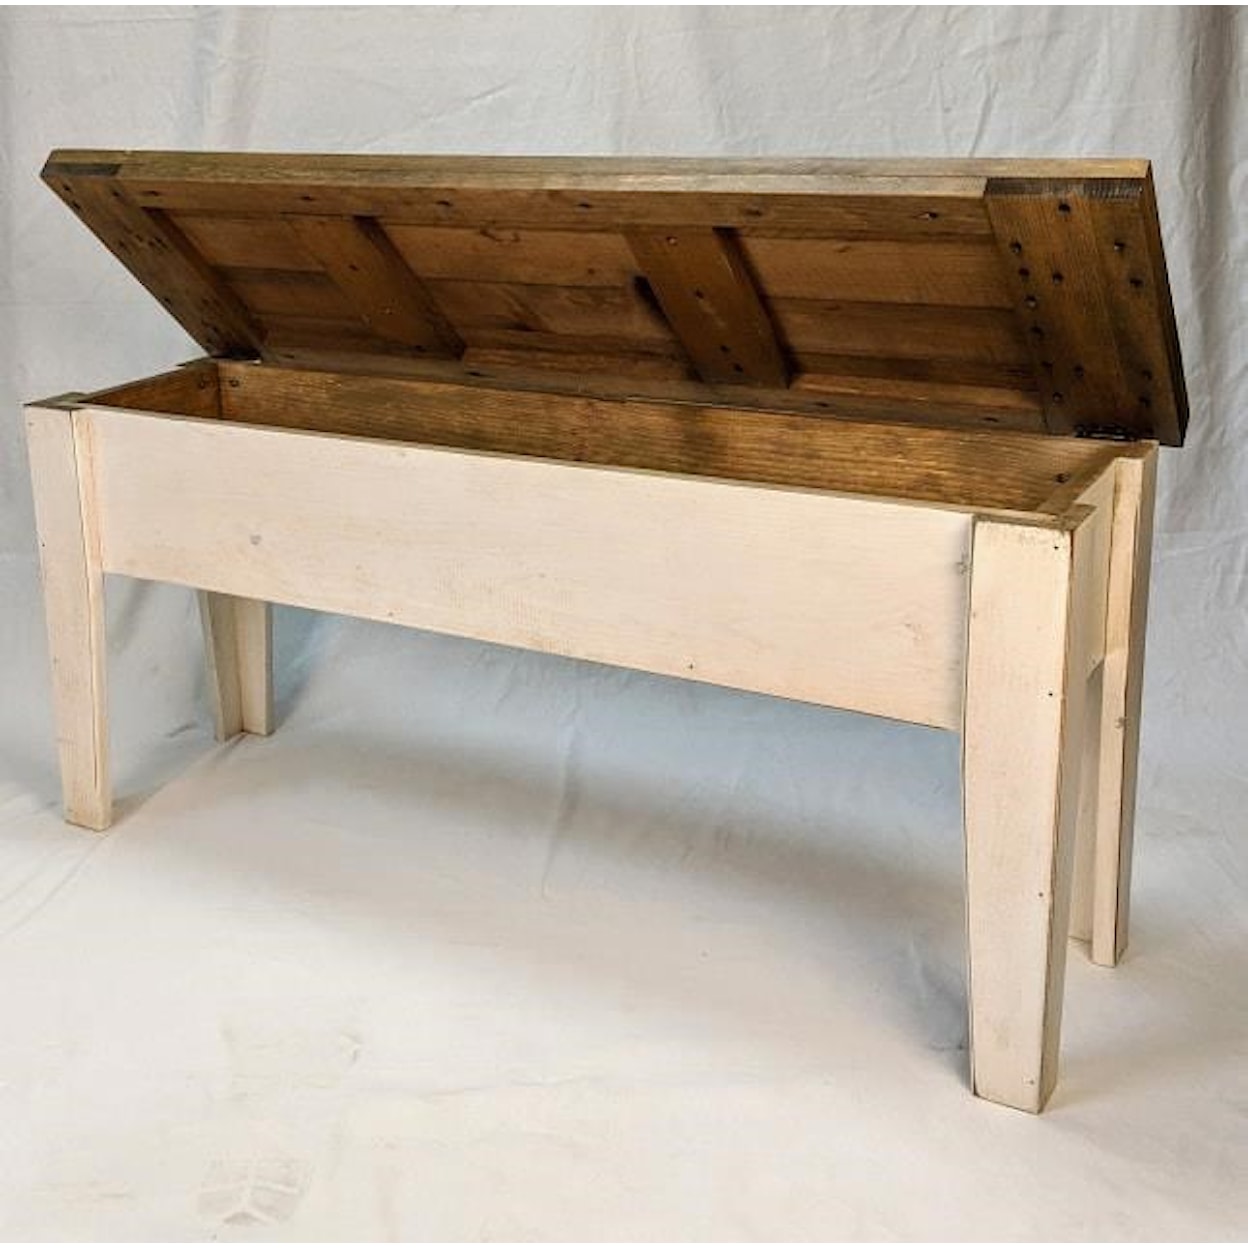 Springwater Woodcraft SW280 Storage Bench